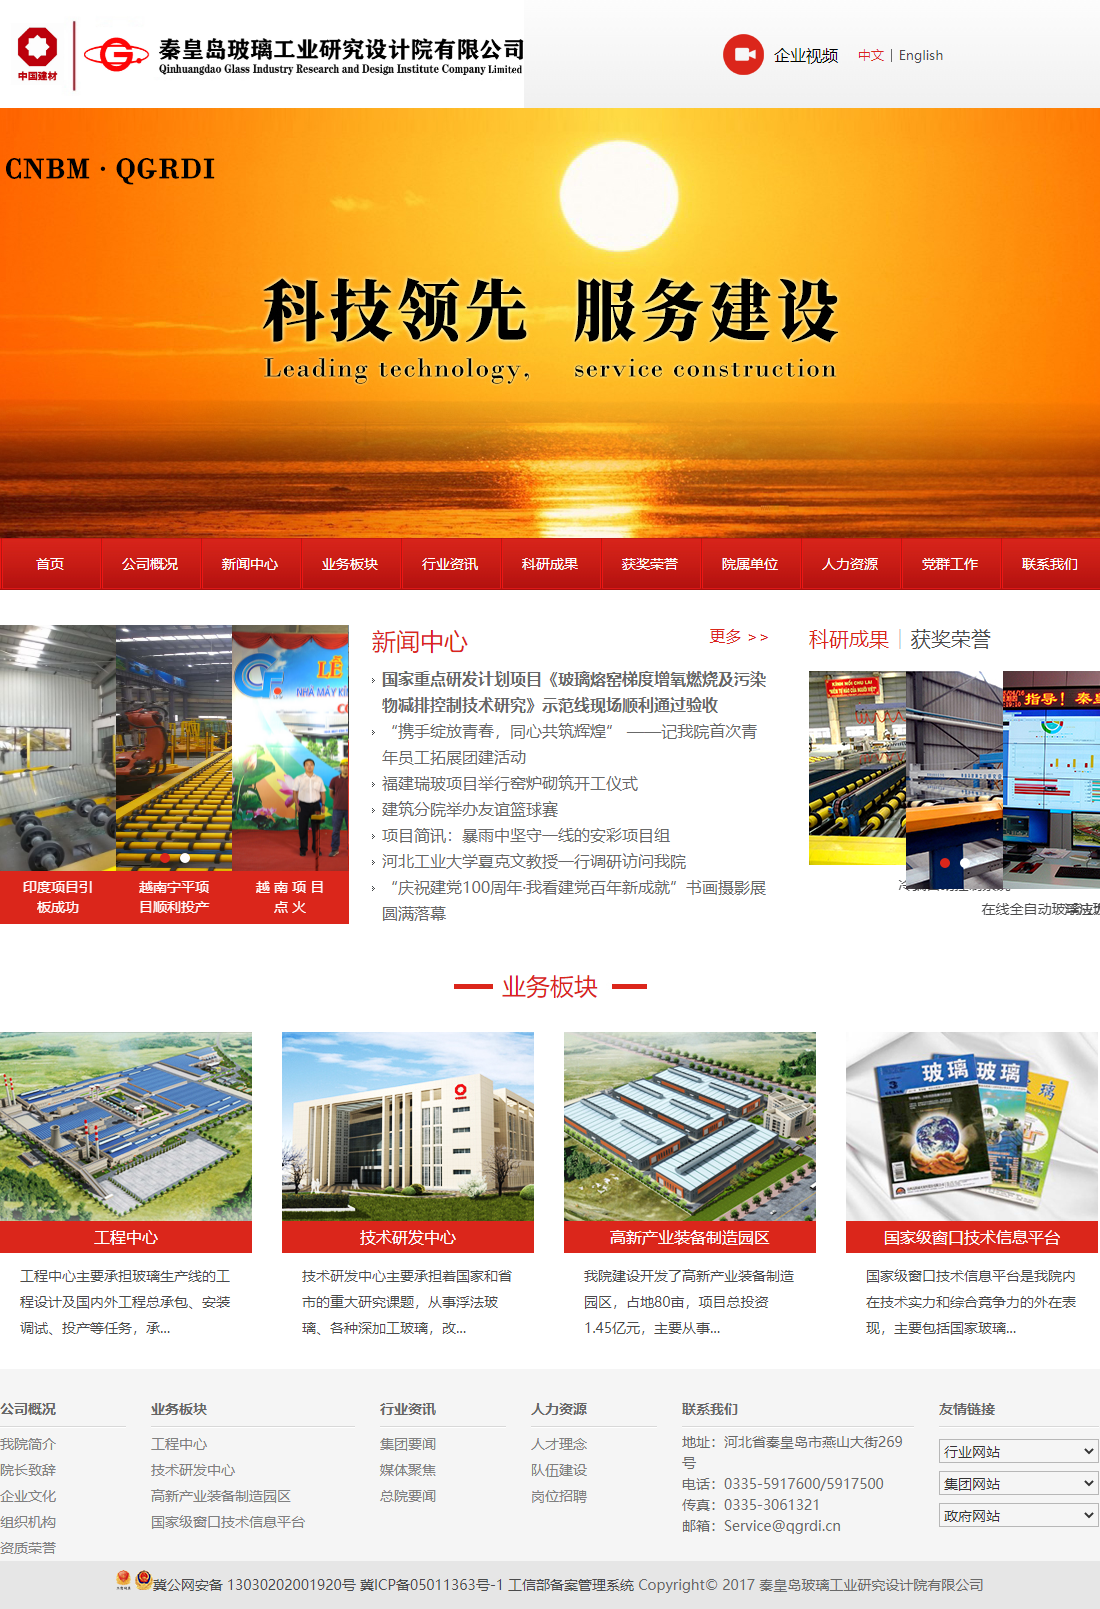 秦皇岛玻璃工业研究设计院有限公司网站案例